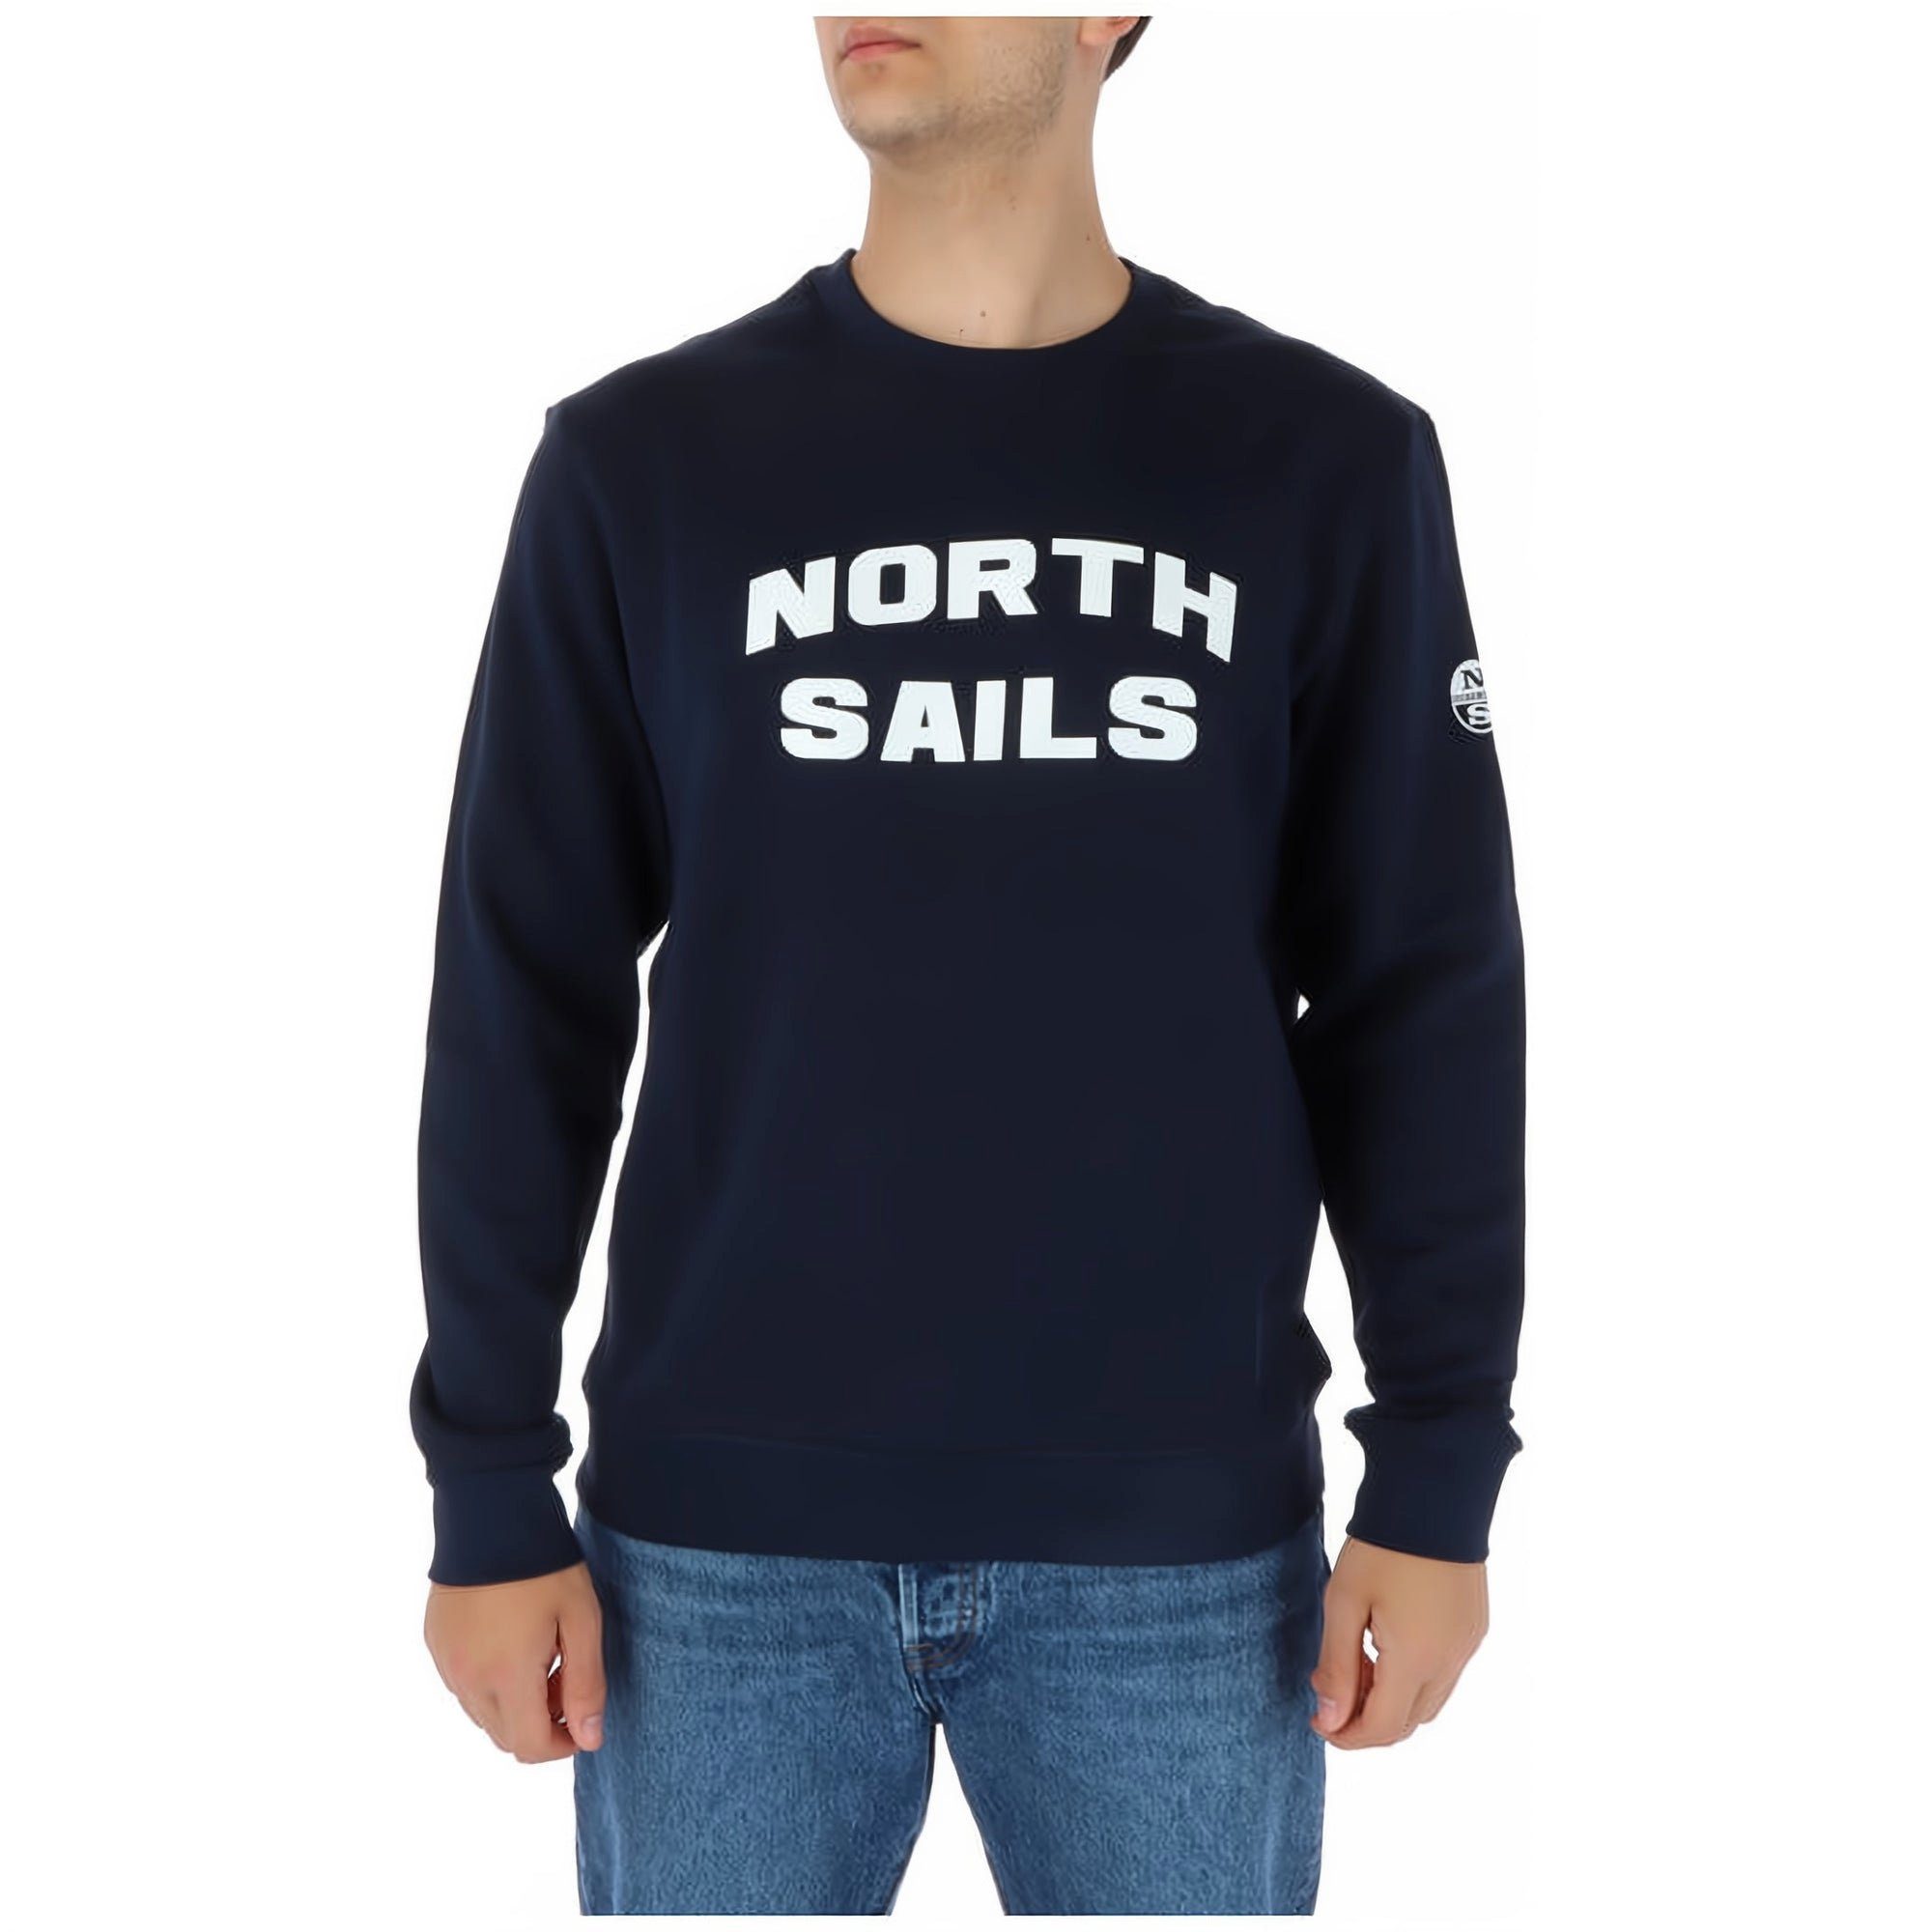 Sweatshirt Sweatshirt genießen! Komfort Herren von, Sails den modische North North bestellen, und Sails Jetzt